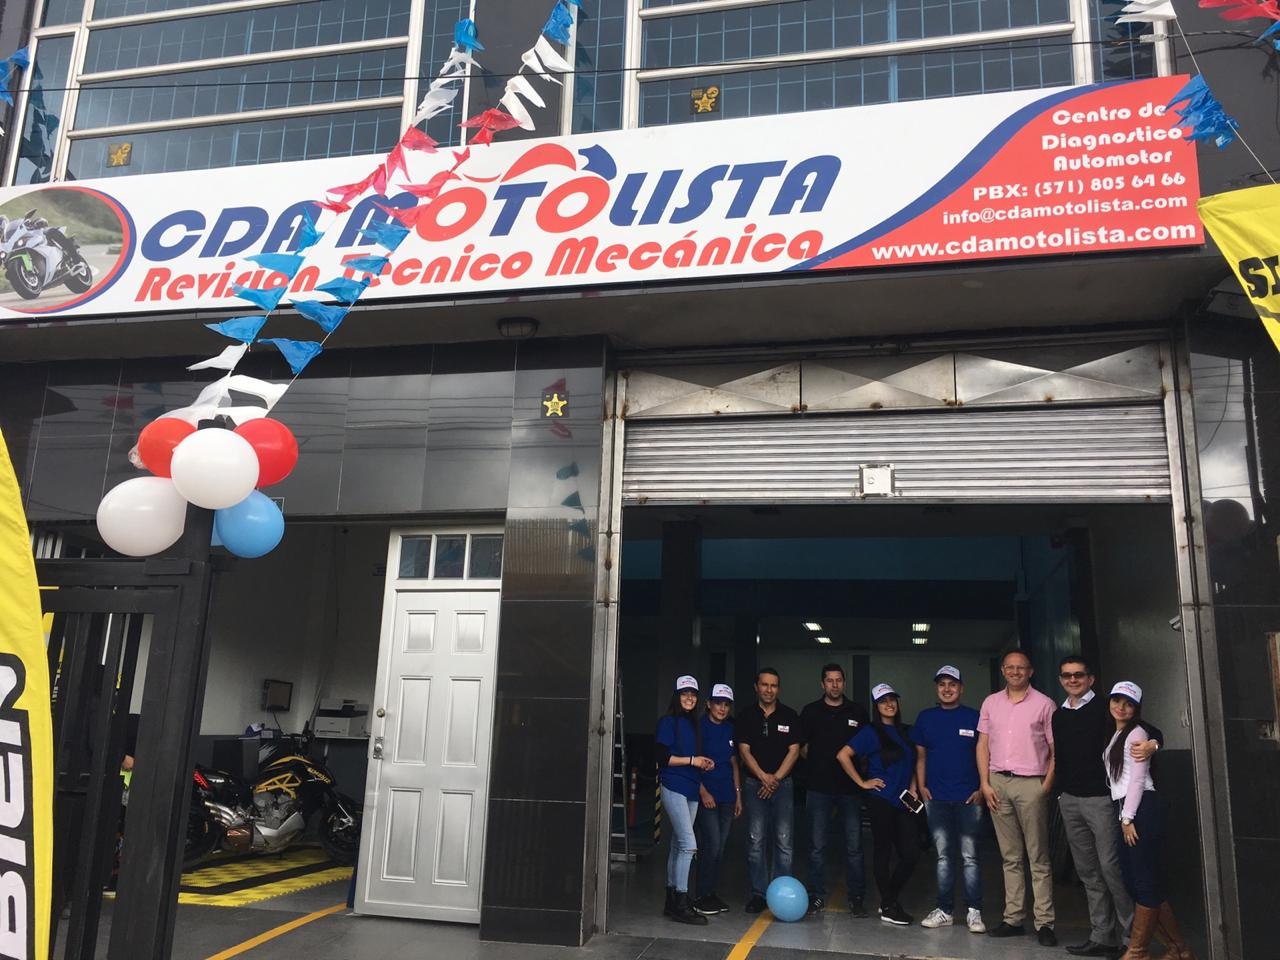 Centro de Diagnostico Automotor CDA Motolista - Bienvenida y Recepción